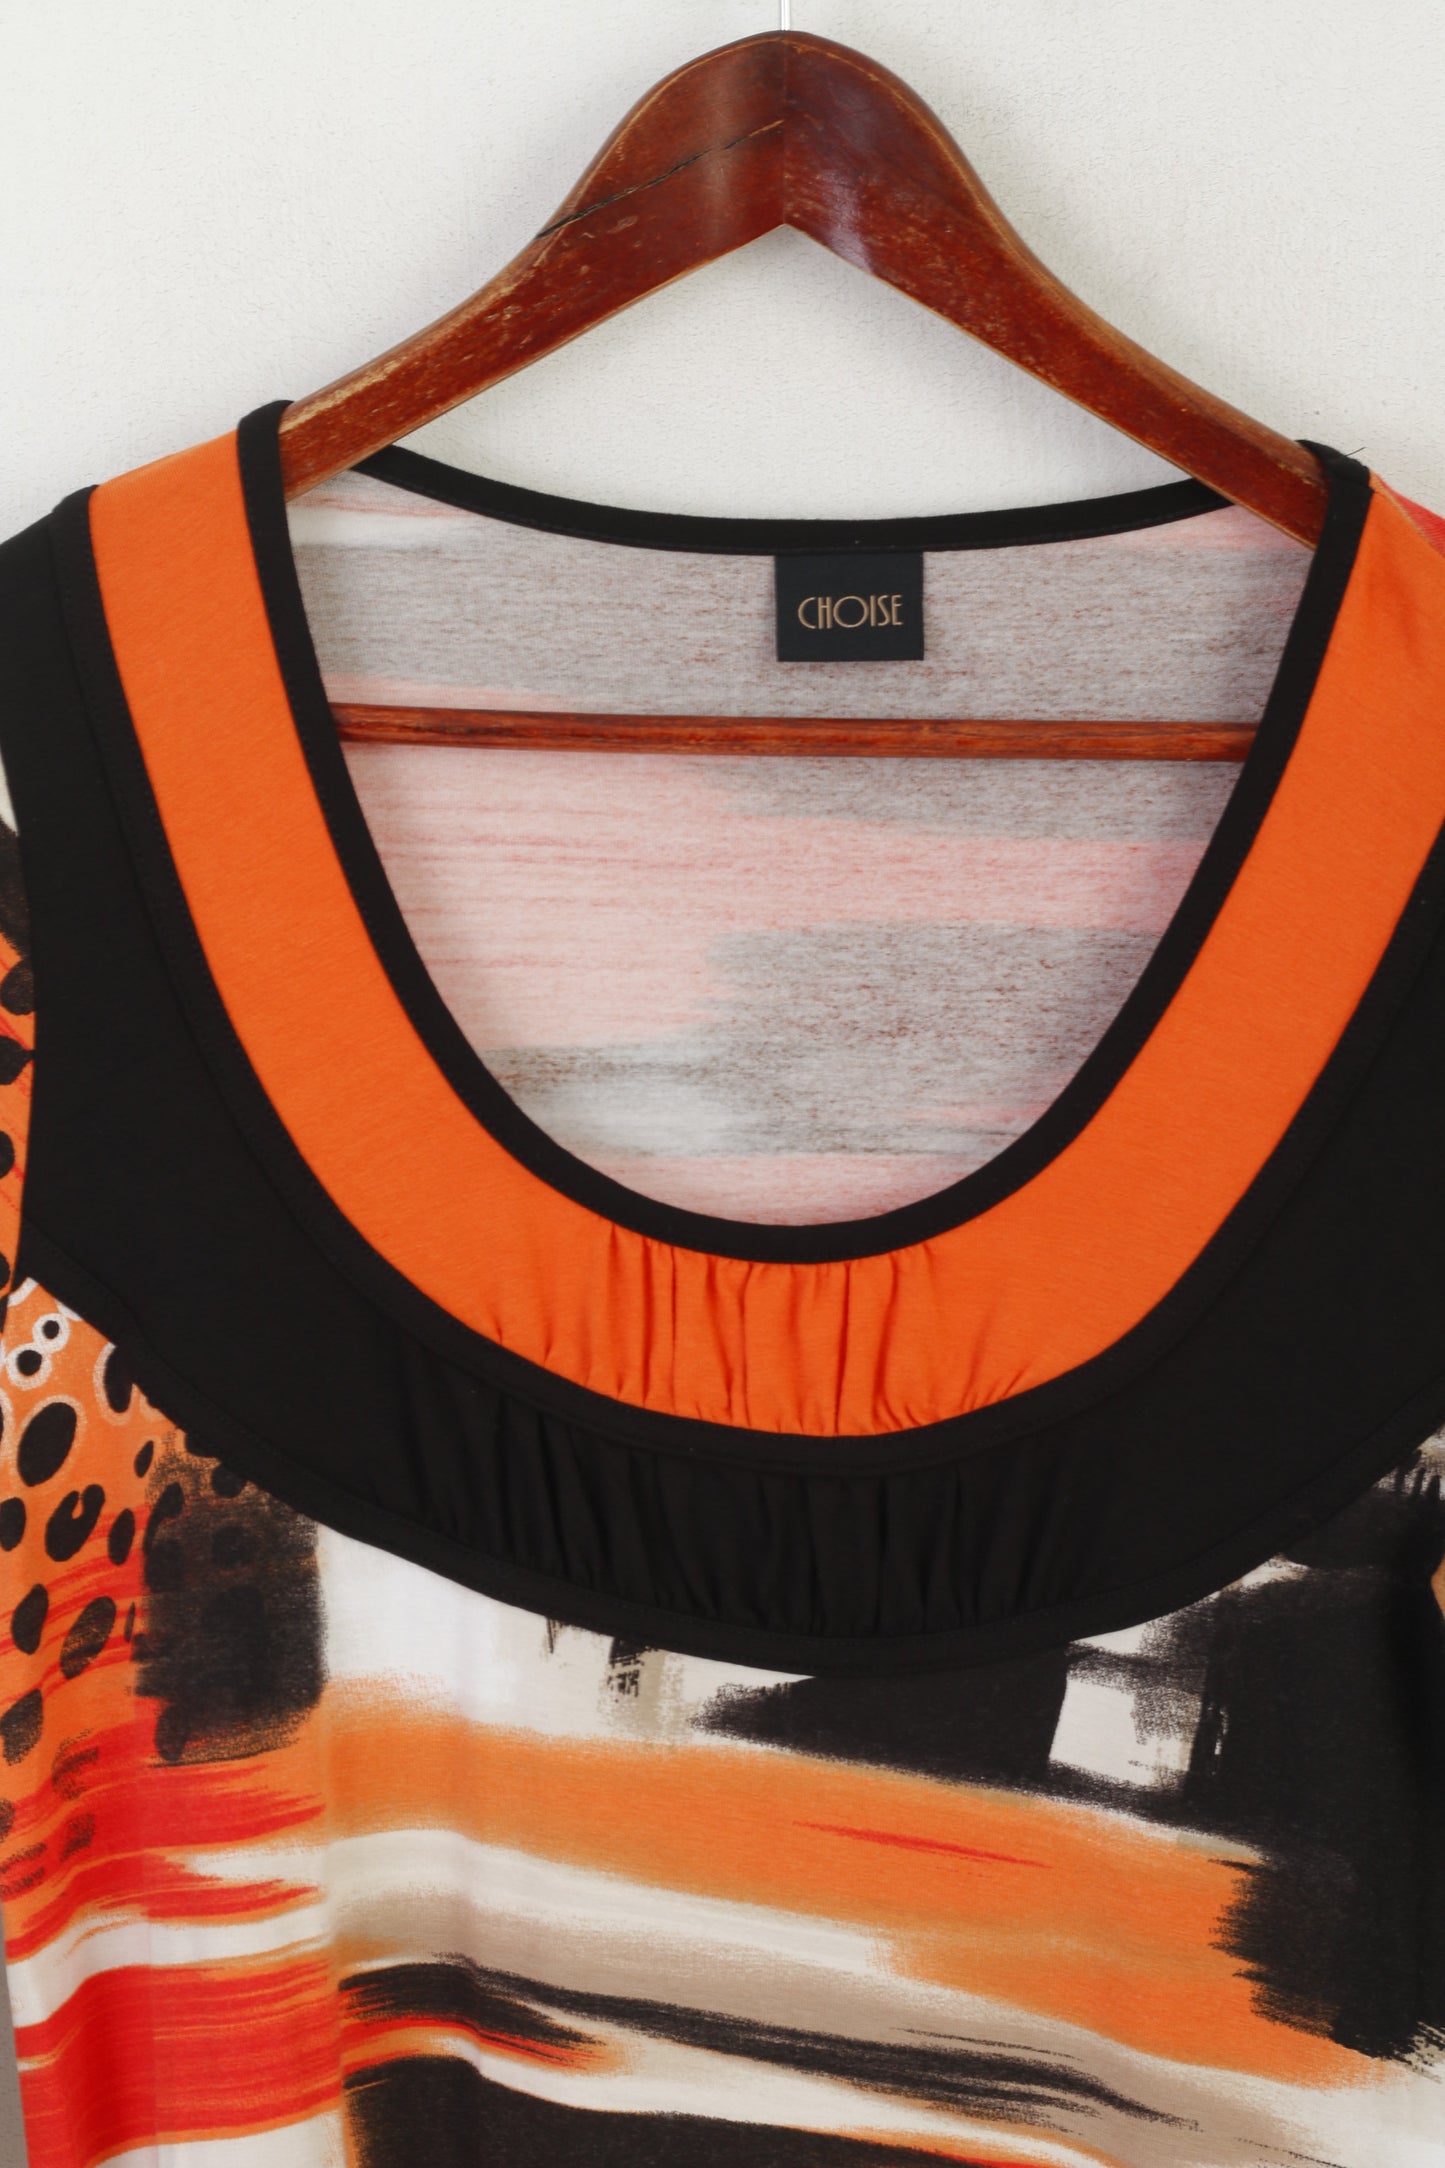 Camicia da donna M Choise Tunica girocollo in viscosa elasticizzata arancione nera